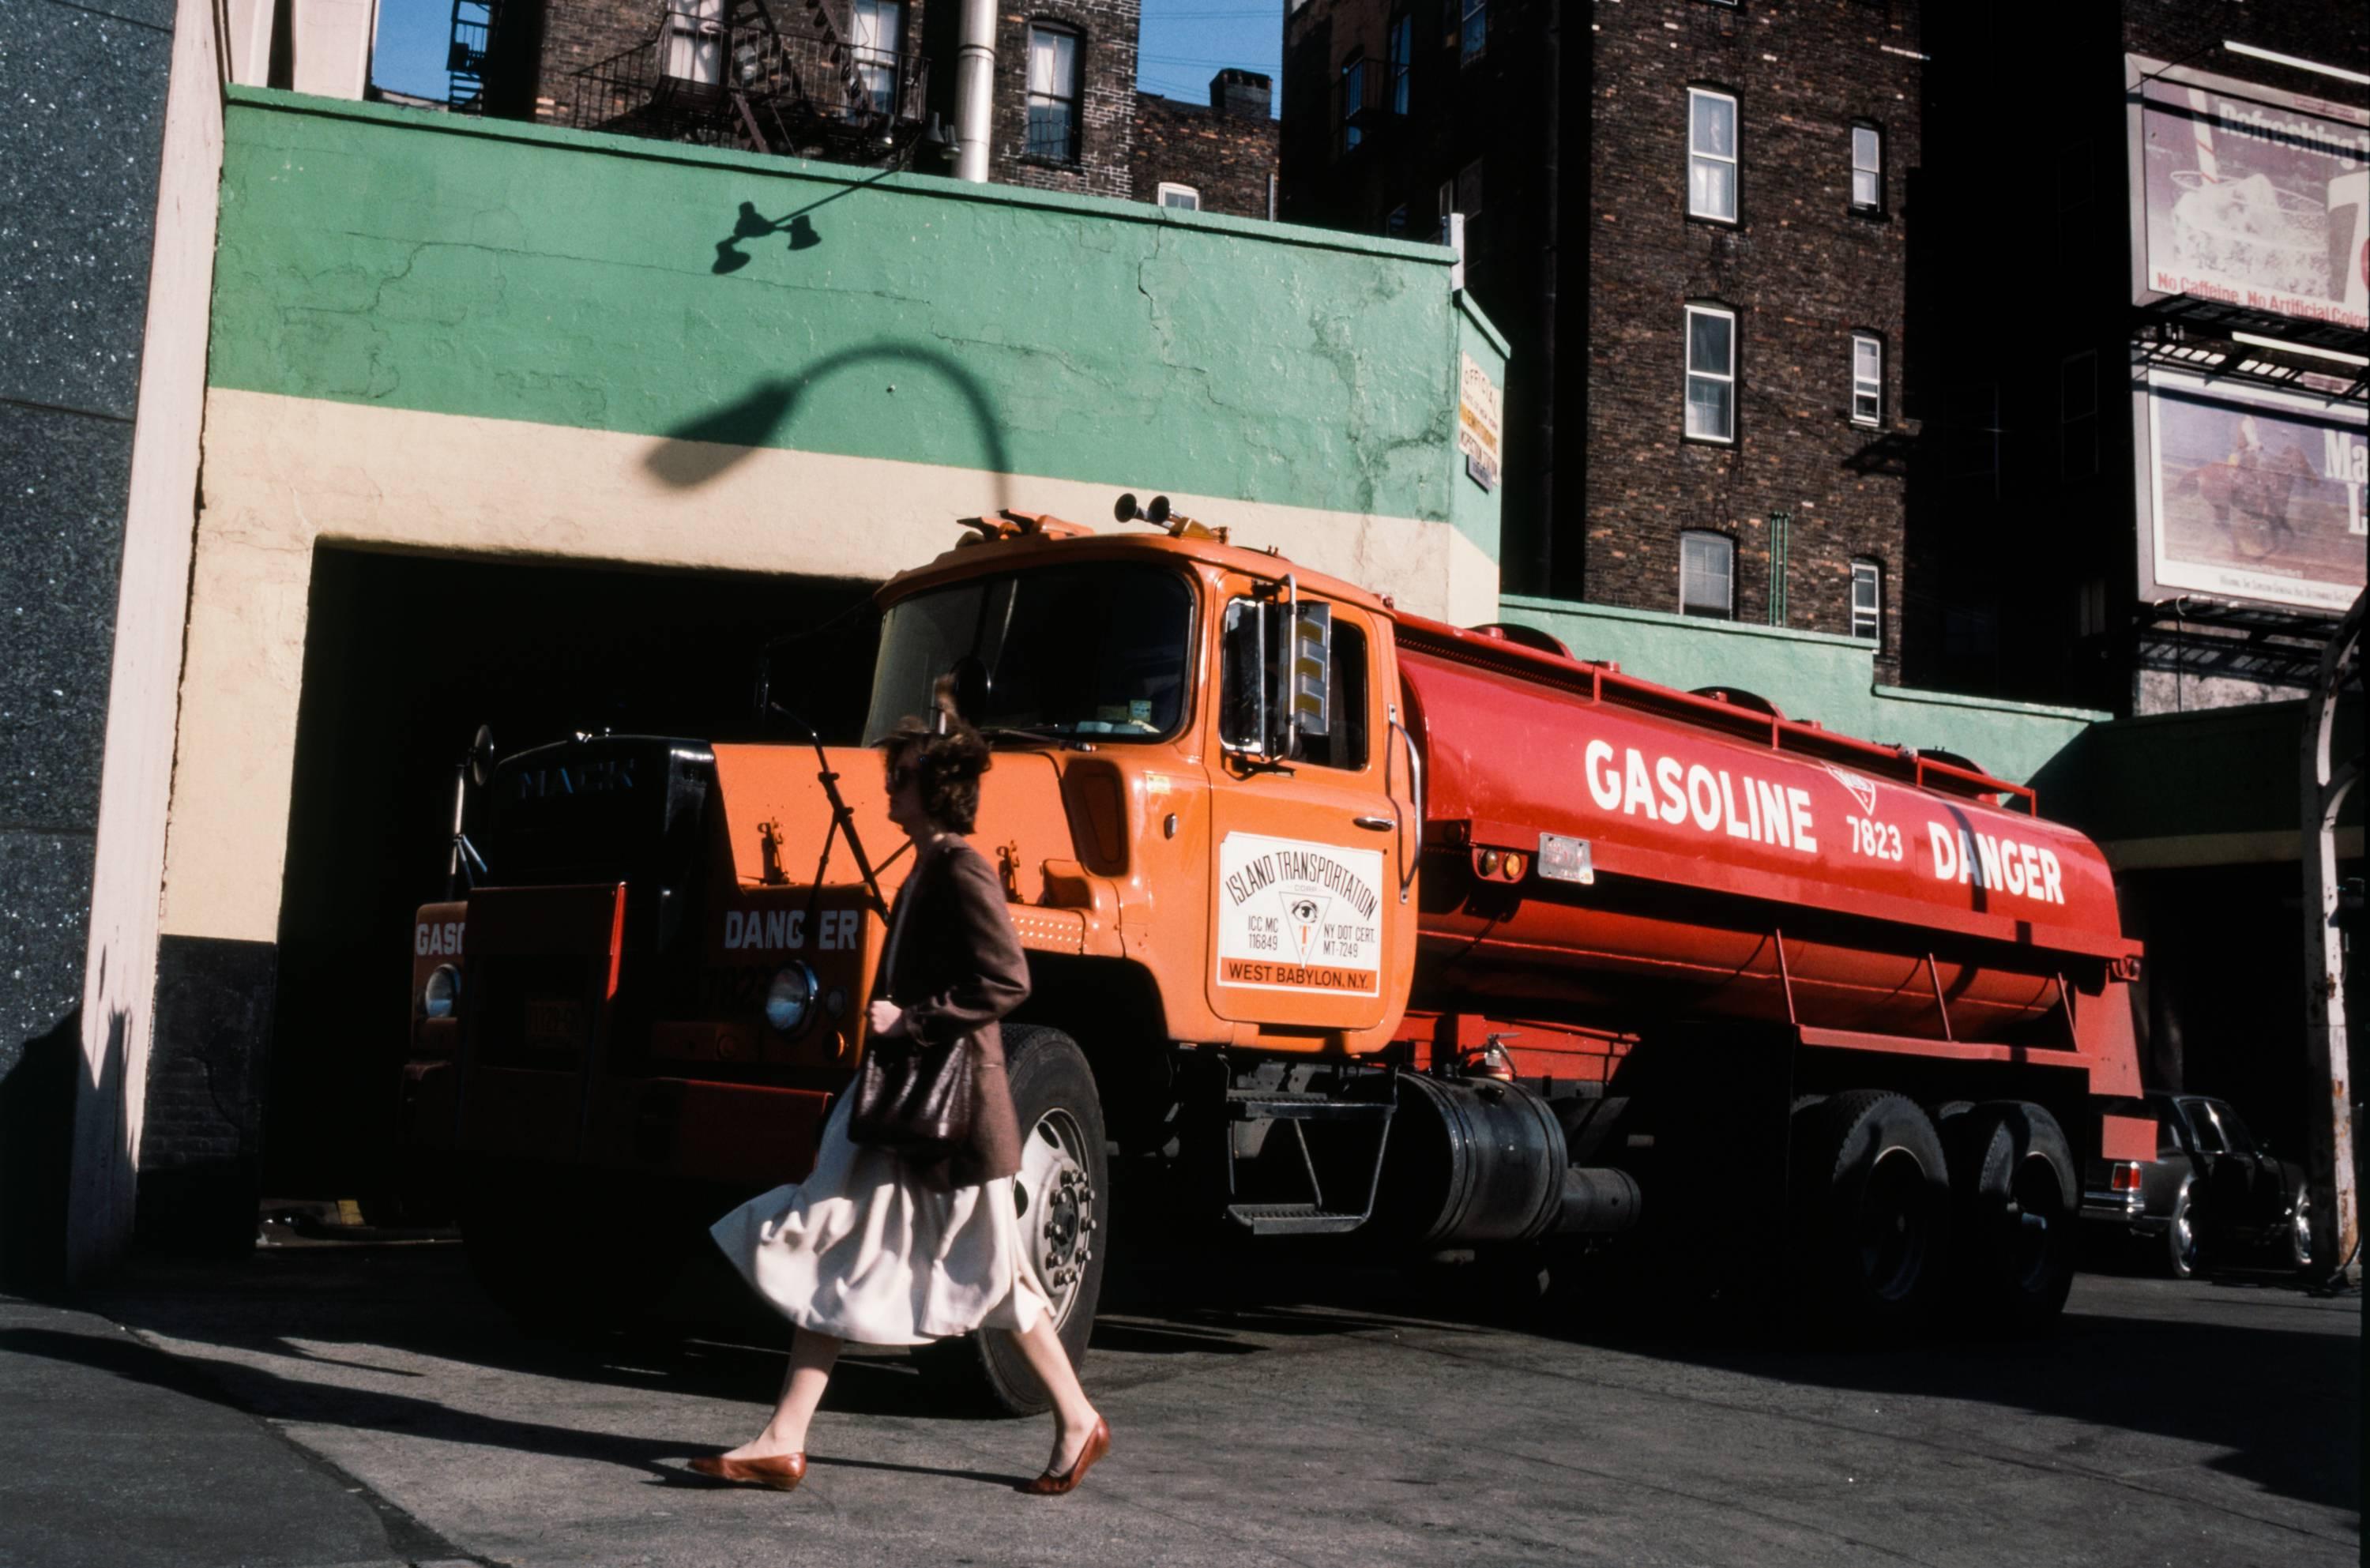 Robert Herman Color Photograph - Soho Texaco, New York, NY 1981 (Manhattan photography)